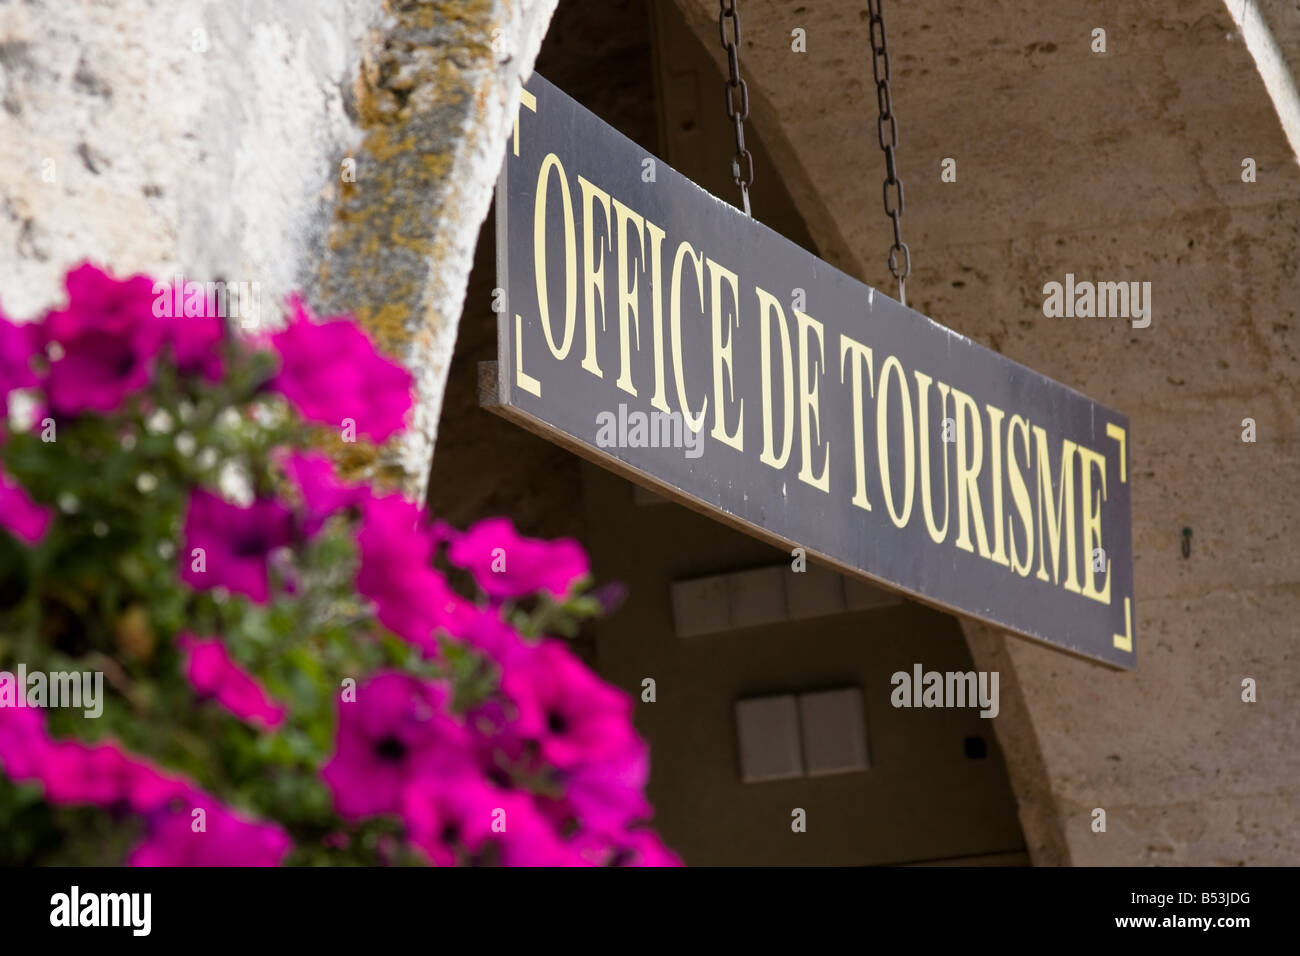 Office de tourisme  - Gers, France Stock Photo